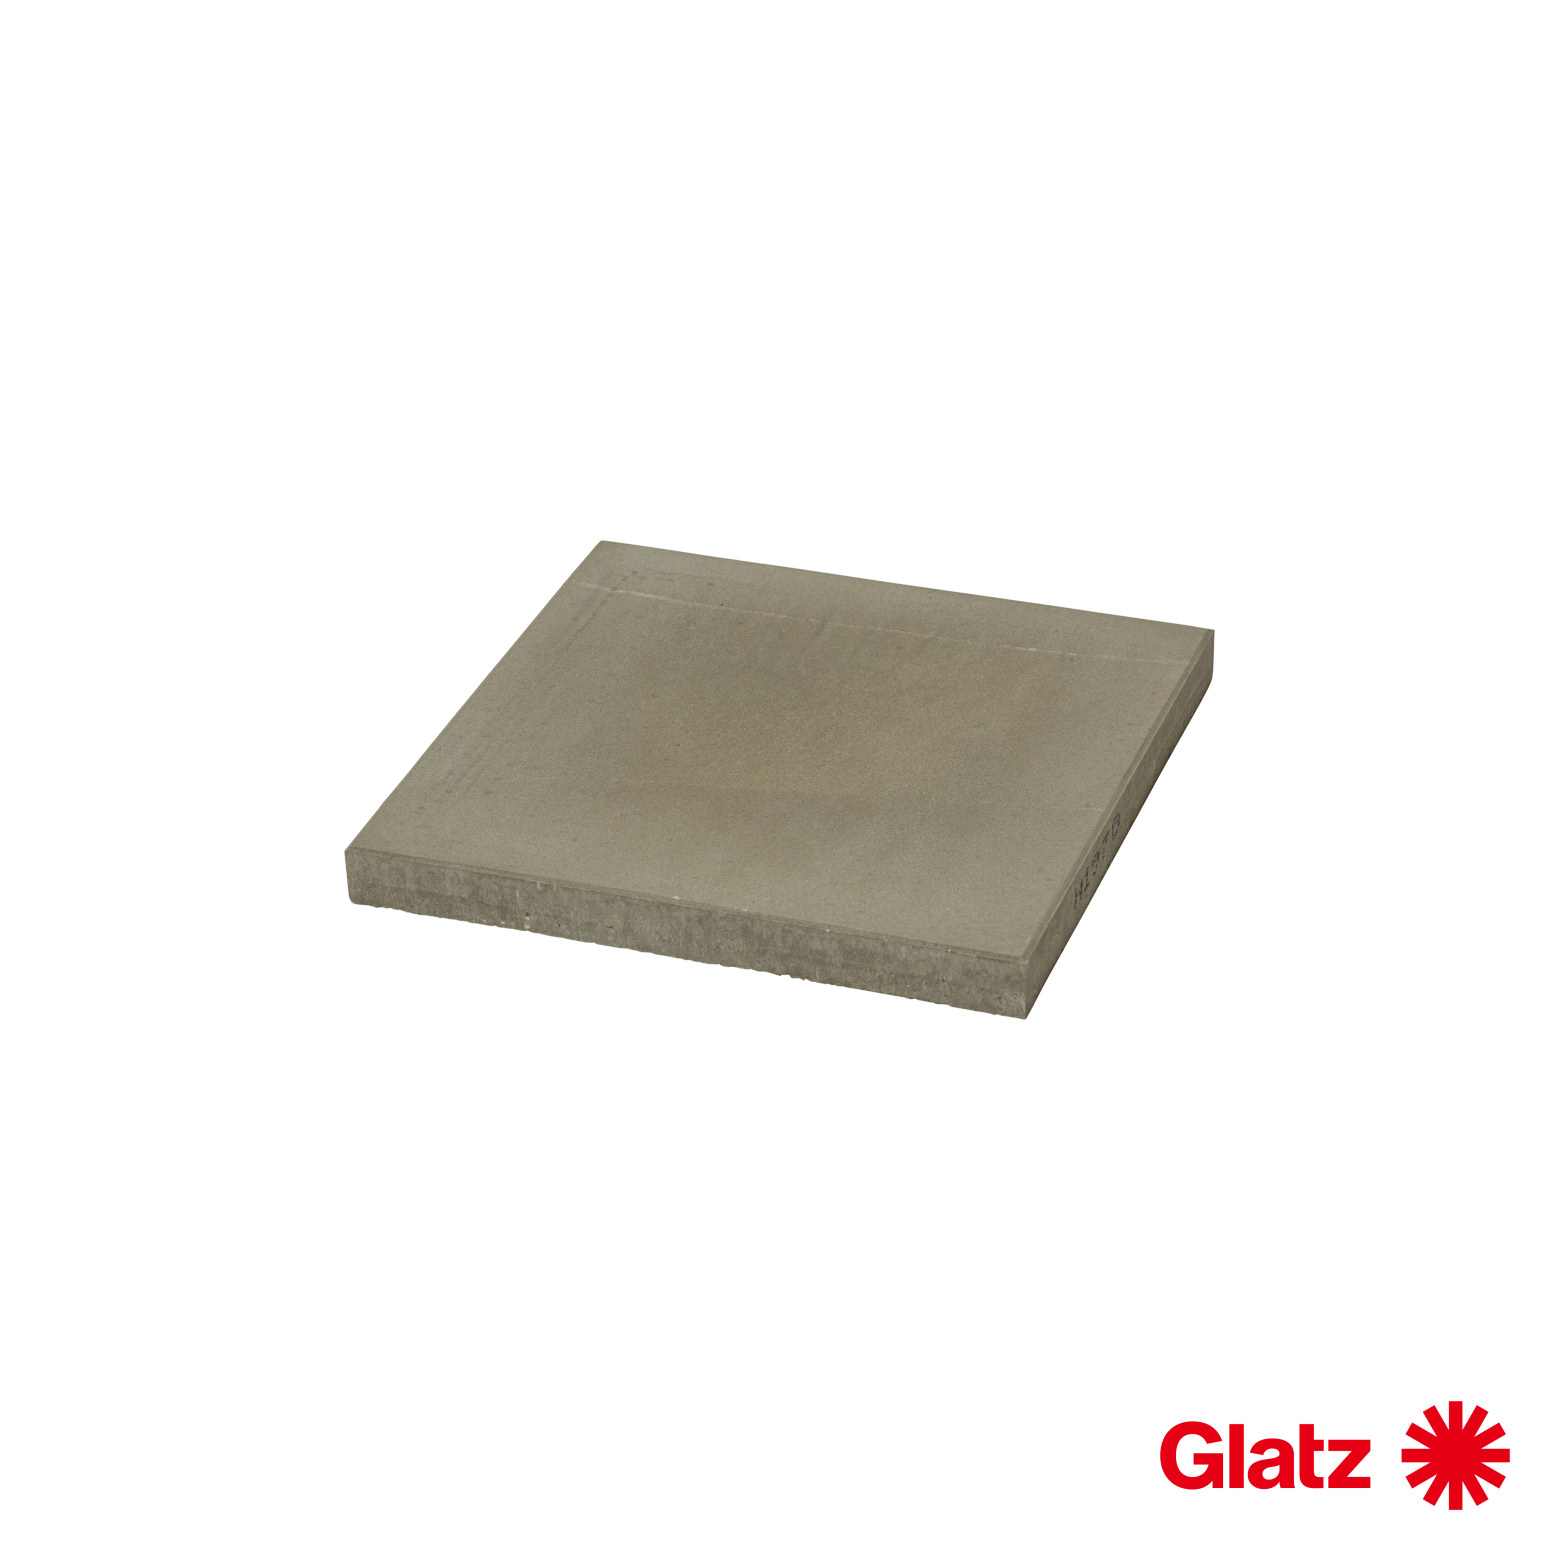 Glatz Platten-Set, 8 Stück, 40x40x4 cm, (ca. 110 kg), Beton